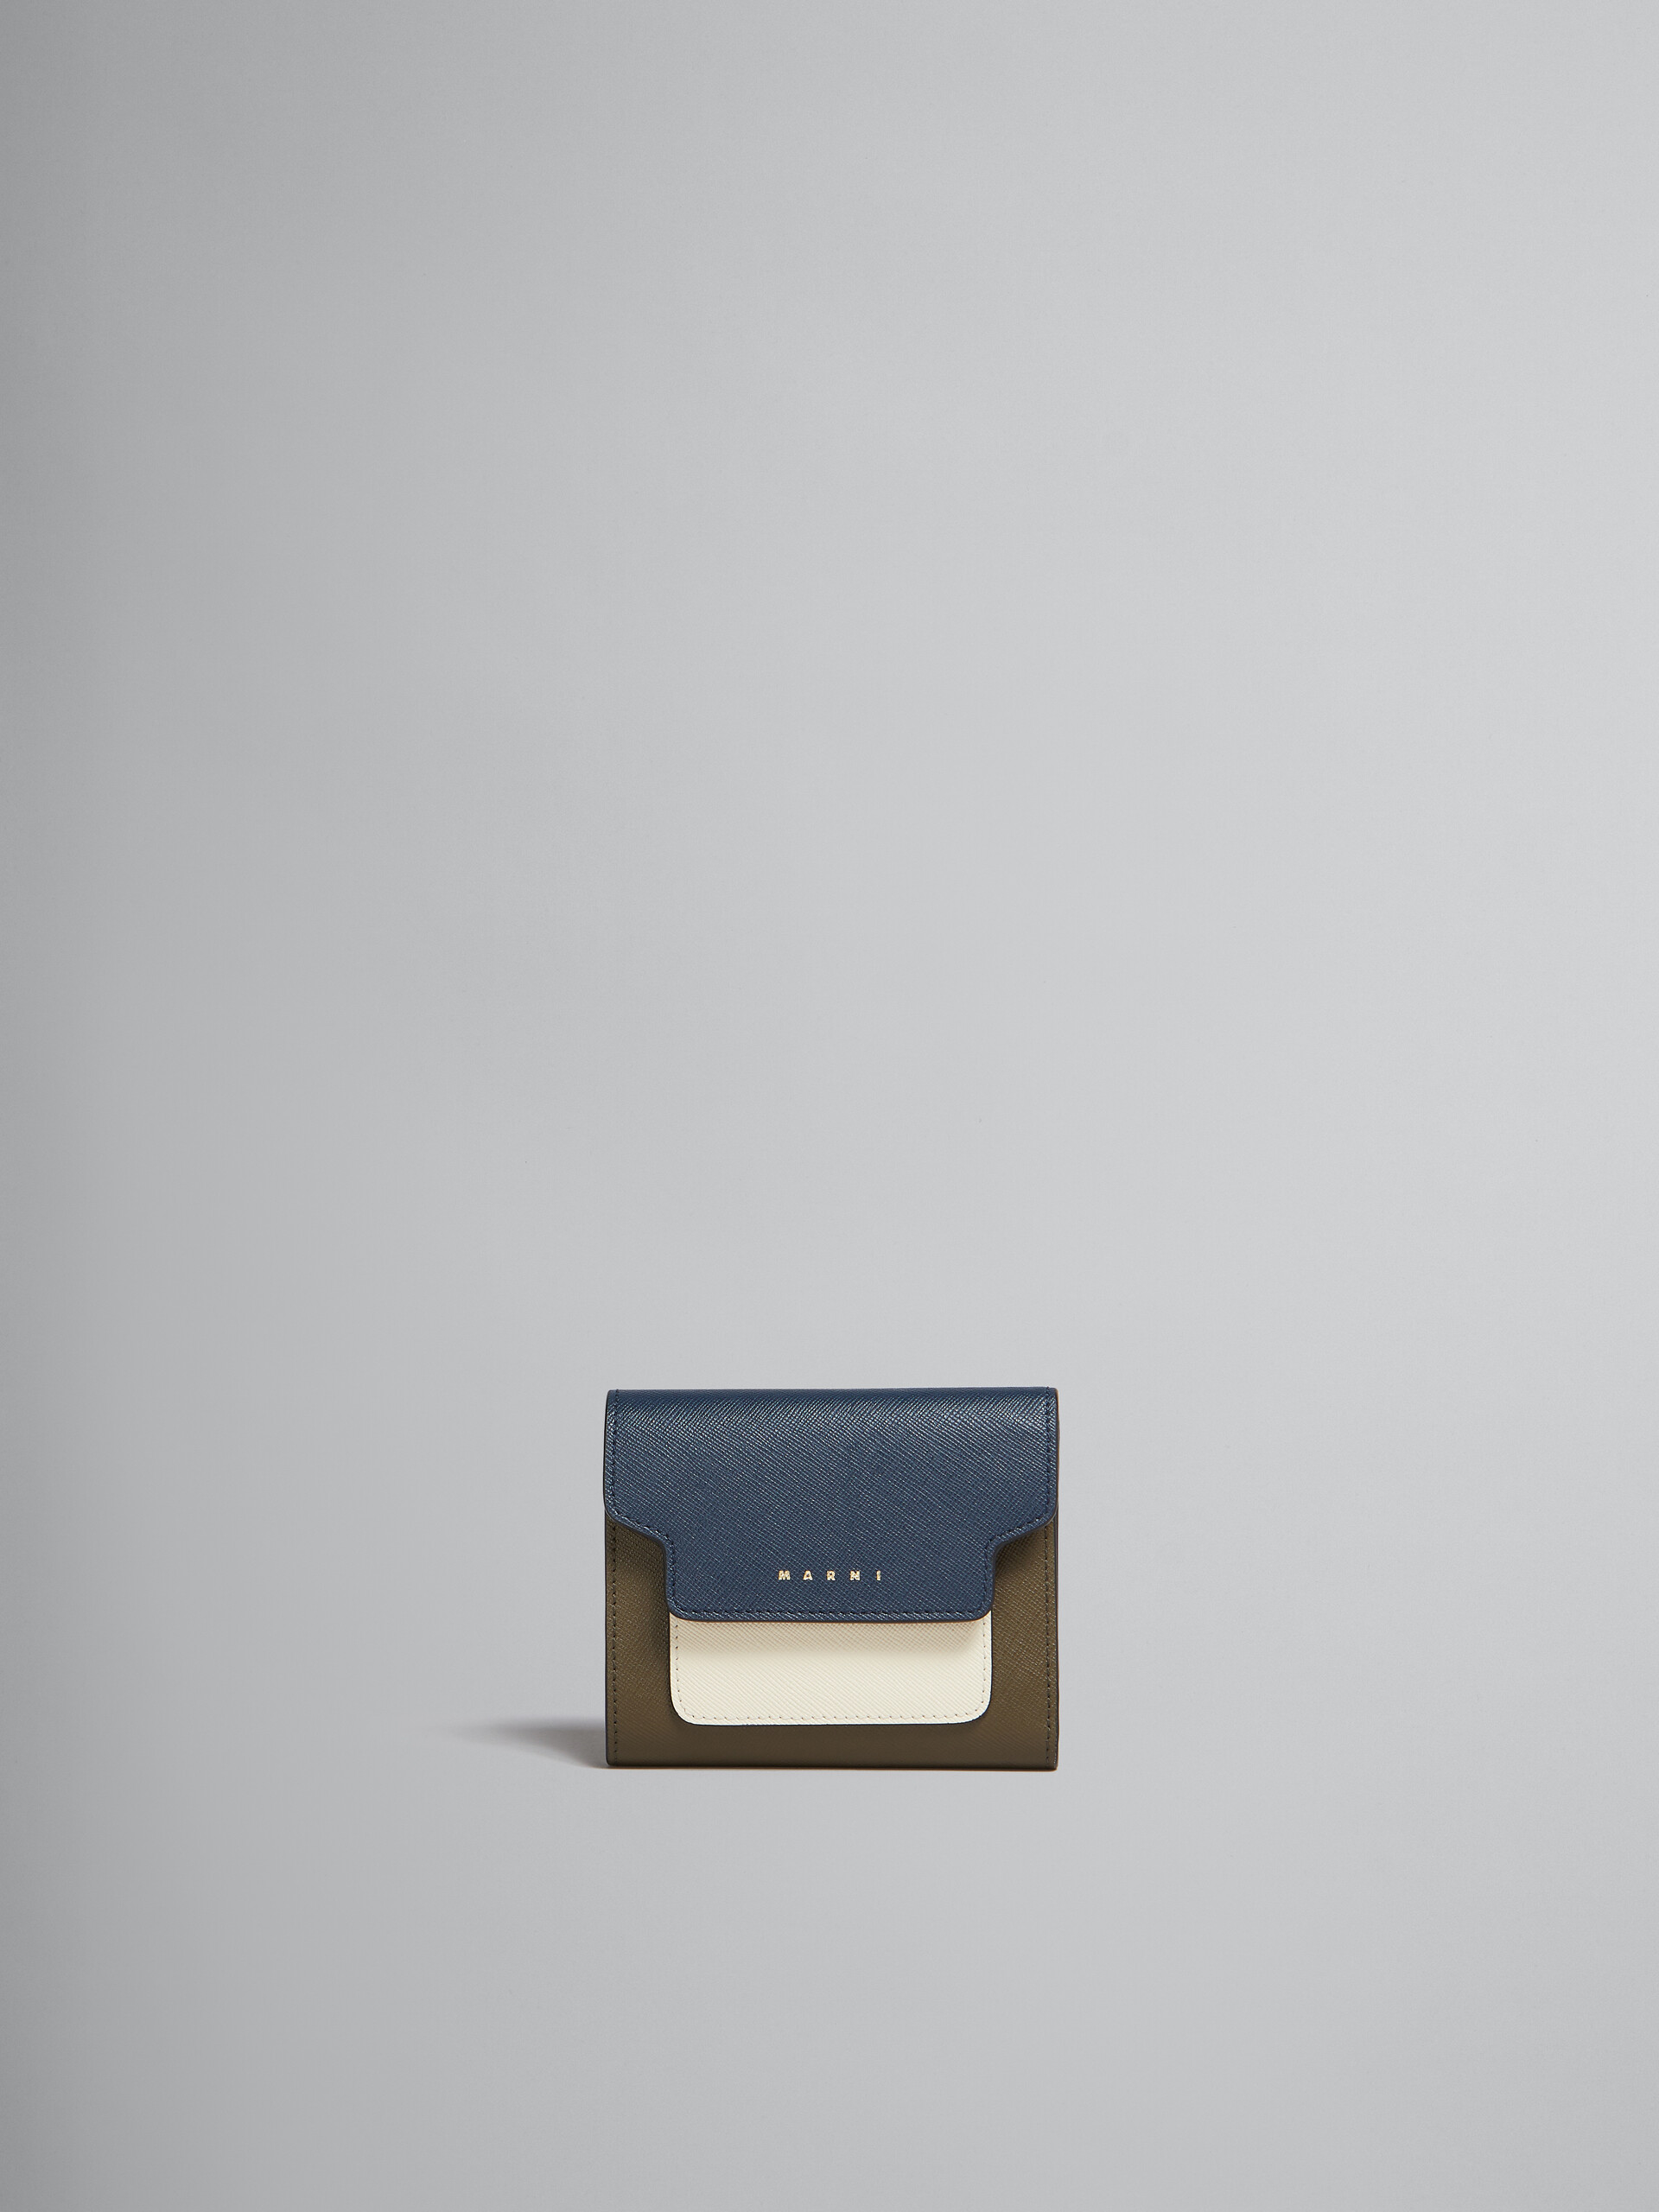 Portemonnaie aus Saffiano-Leder in Hellgrün, Weiß und Braun - Brieftaschen - Image 1